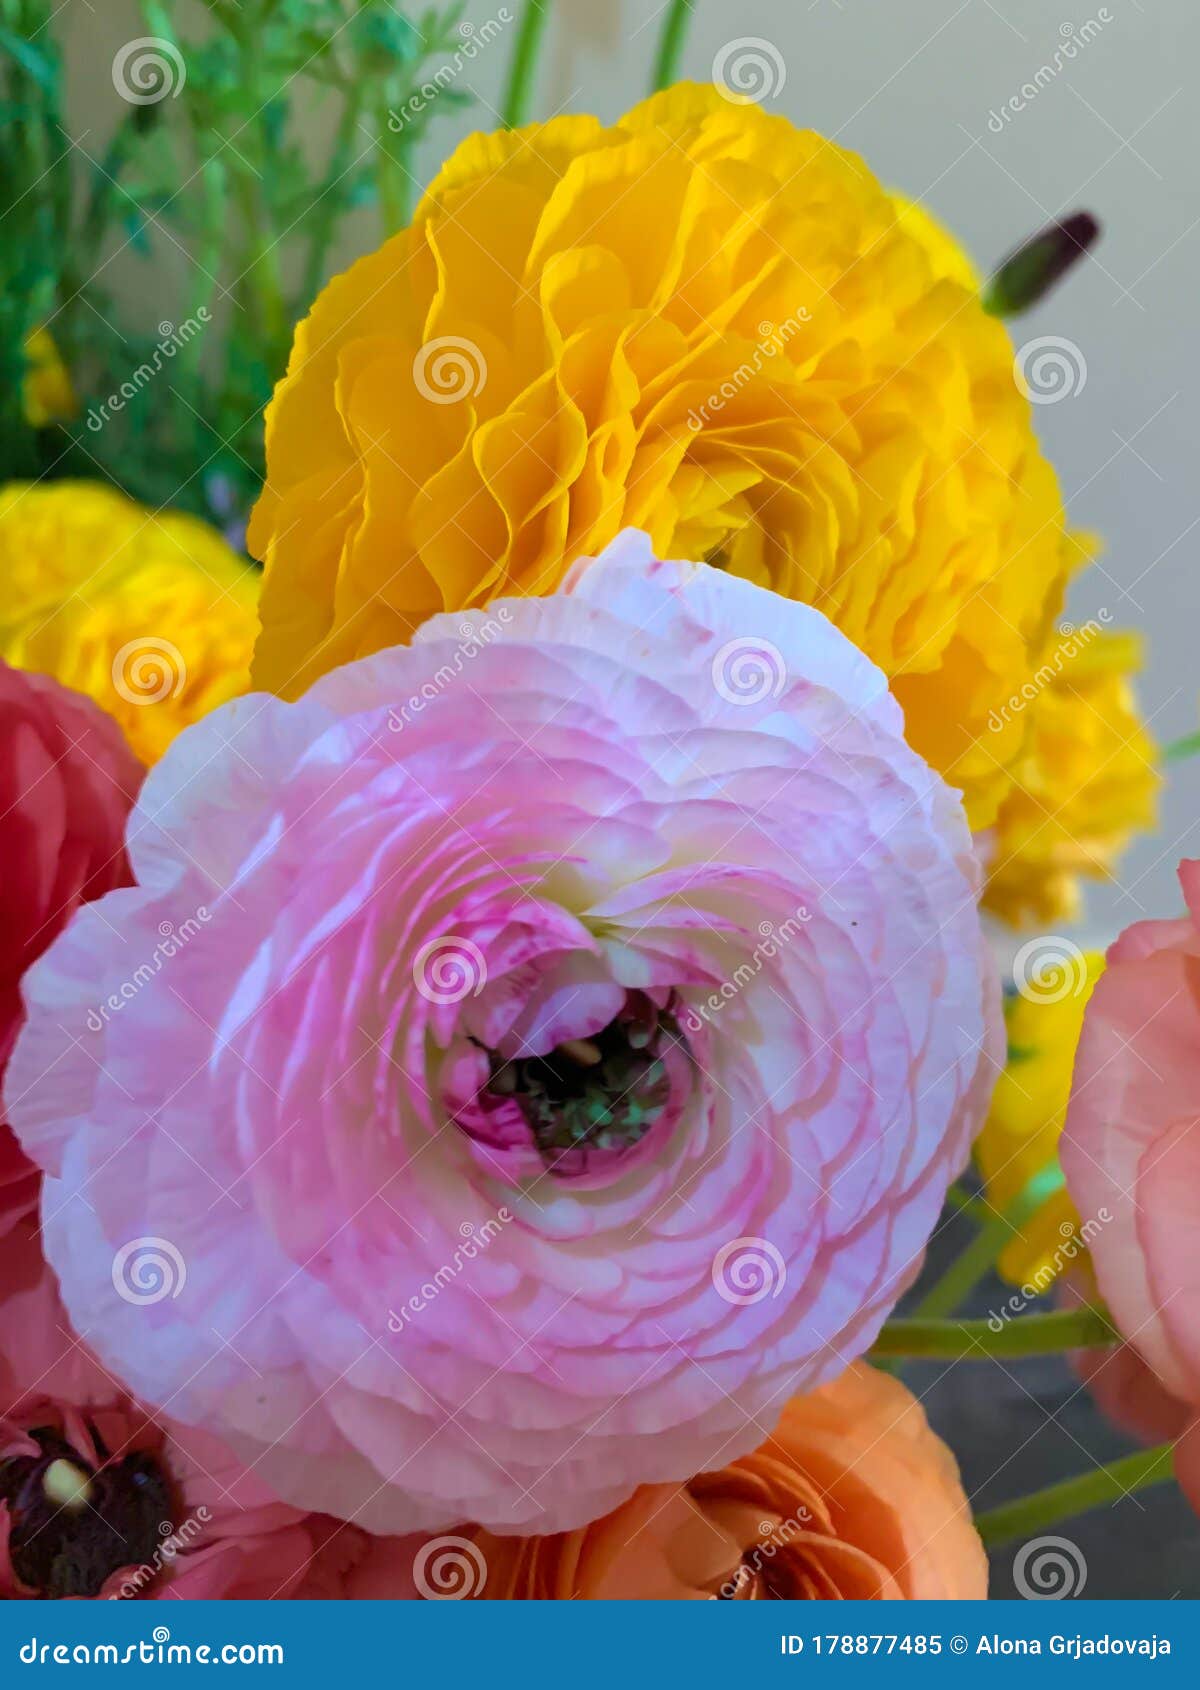 Asiaticus Asiatique Rose Et Jaune Des Fleurs Ranunculus Renoncule Image  stock - Image du nature, anniversaire: 178877485